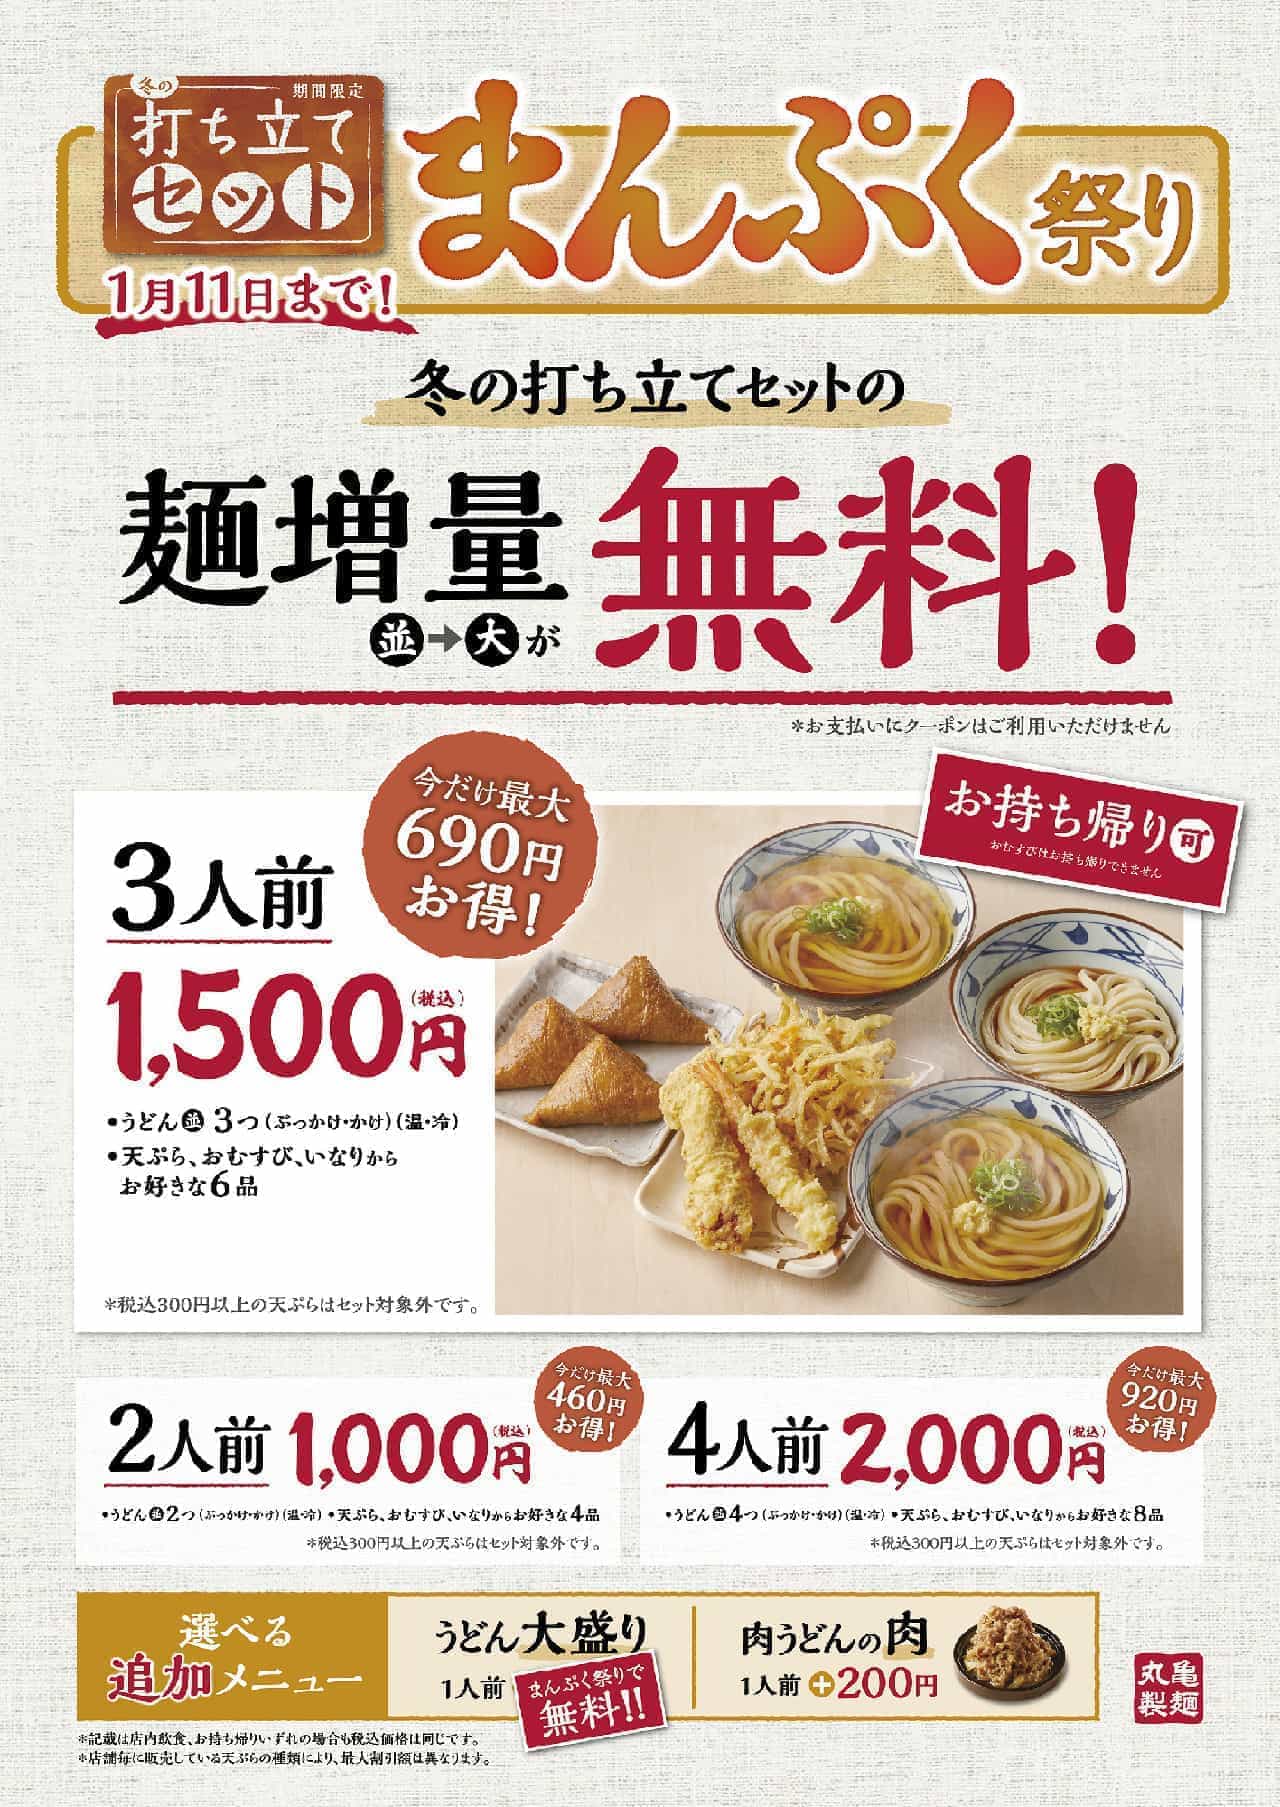 丸亀製麺「まんぷく祭り」キャンペーン 